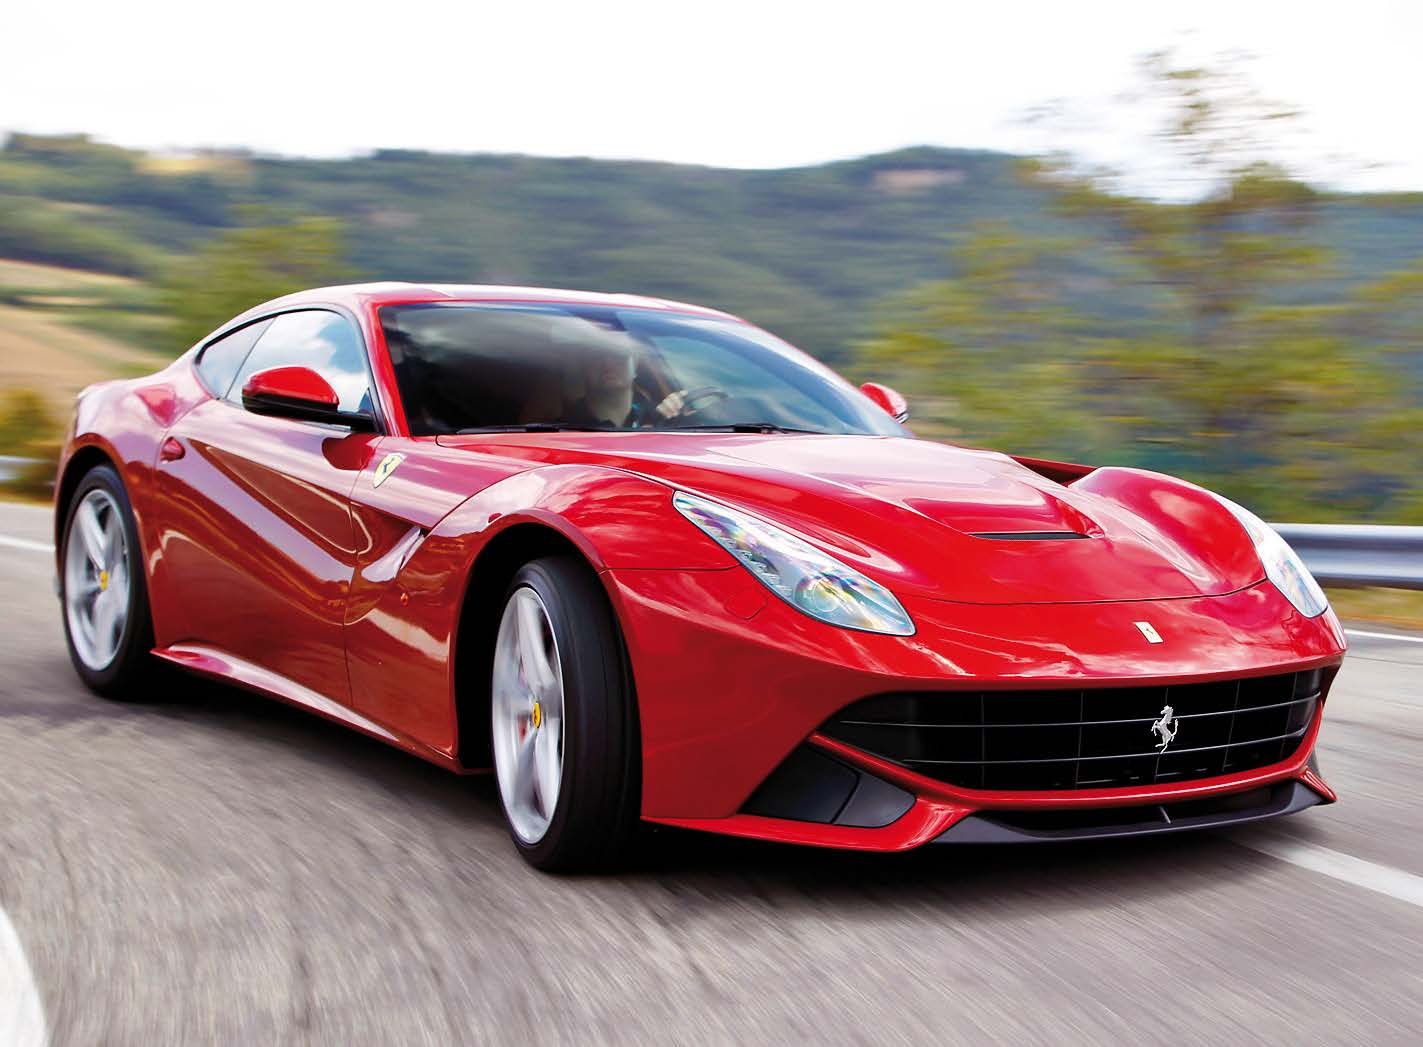 Proprietario di un sogno - Il raduno Ferrari dal 16 al 18 settembre